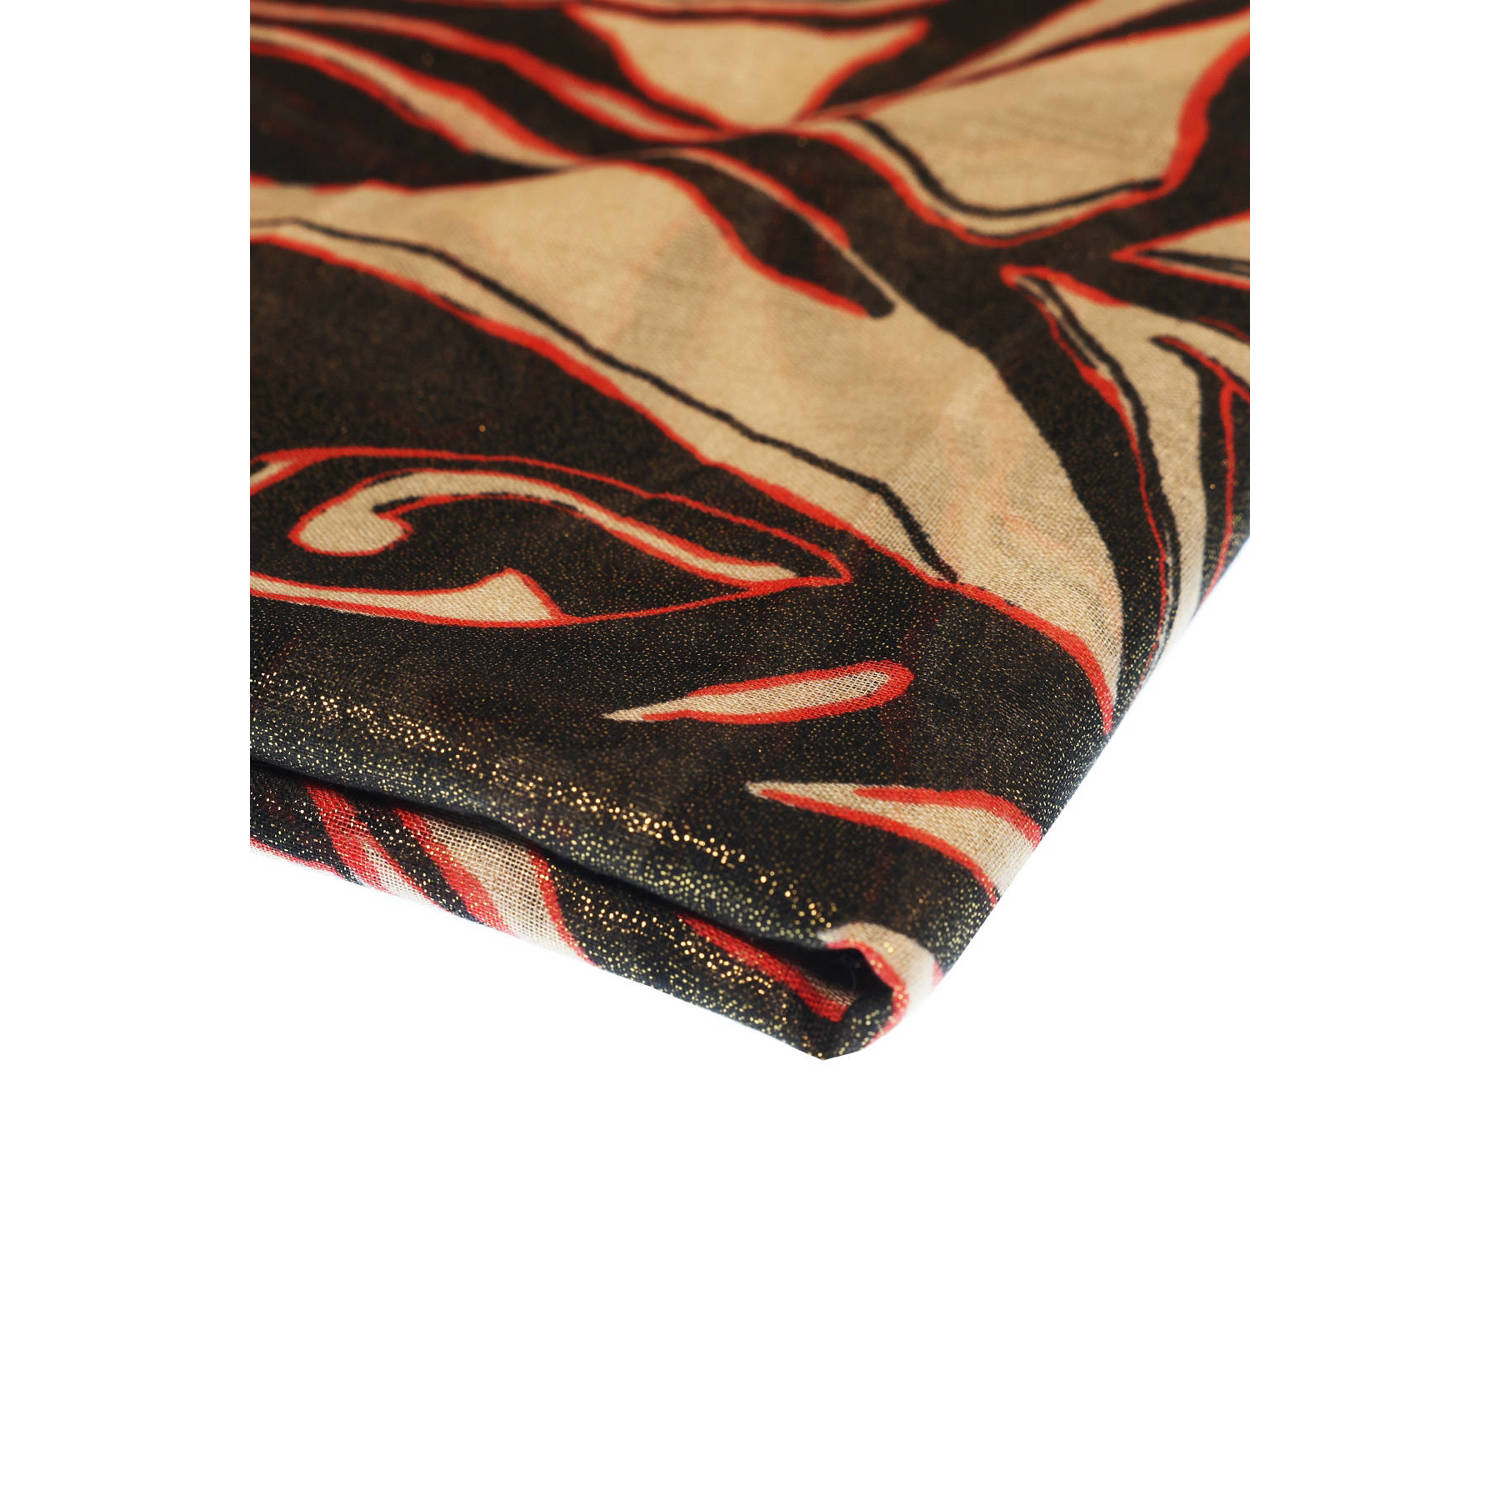 MS Mode sjaal met all over print bruin rood